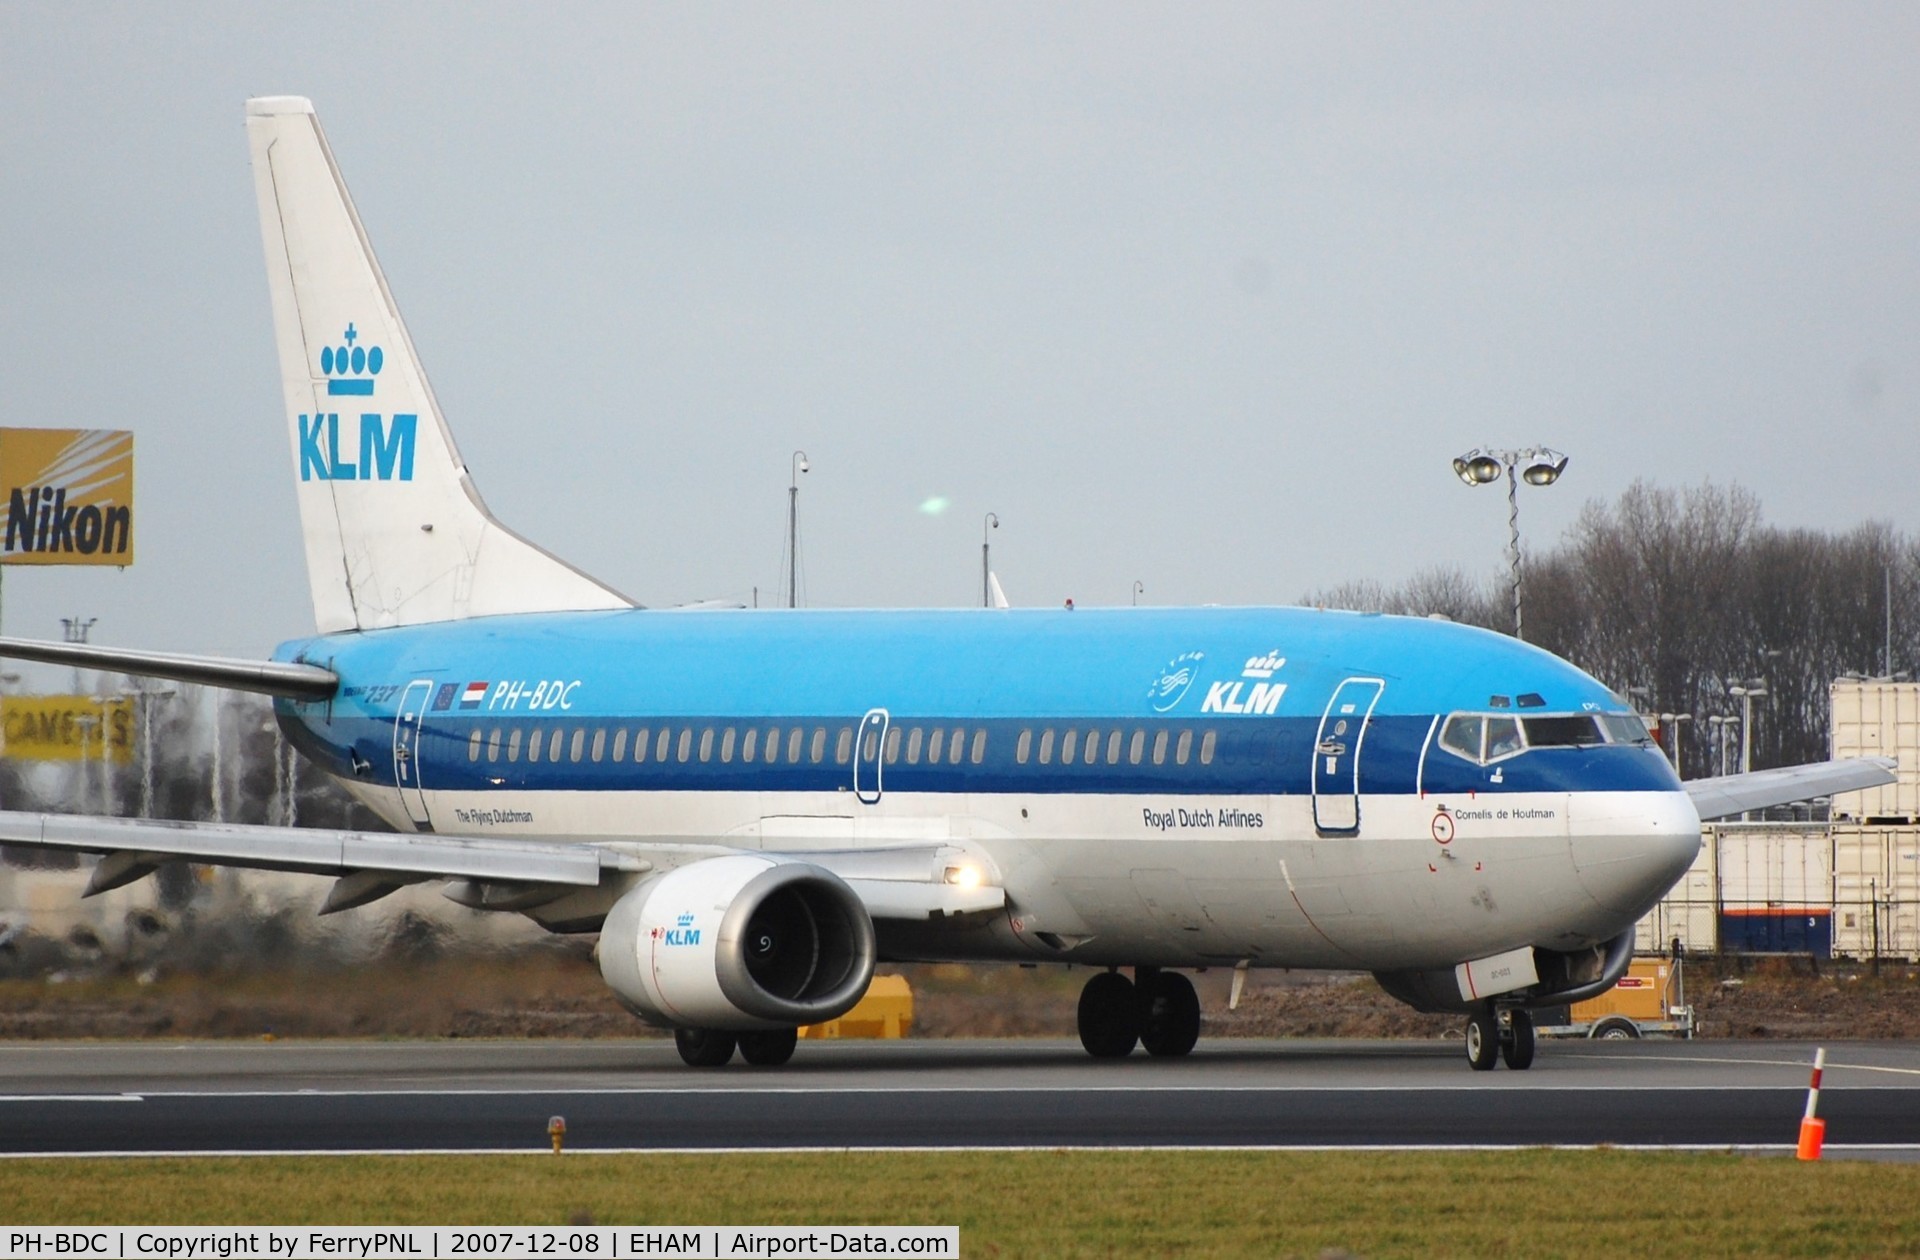 PH-BDC, 1986 Boeing 737-306 C/N 23539, KLM B733 was scrapped in the UK 2009